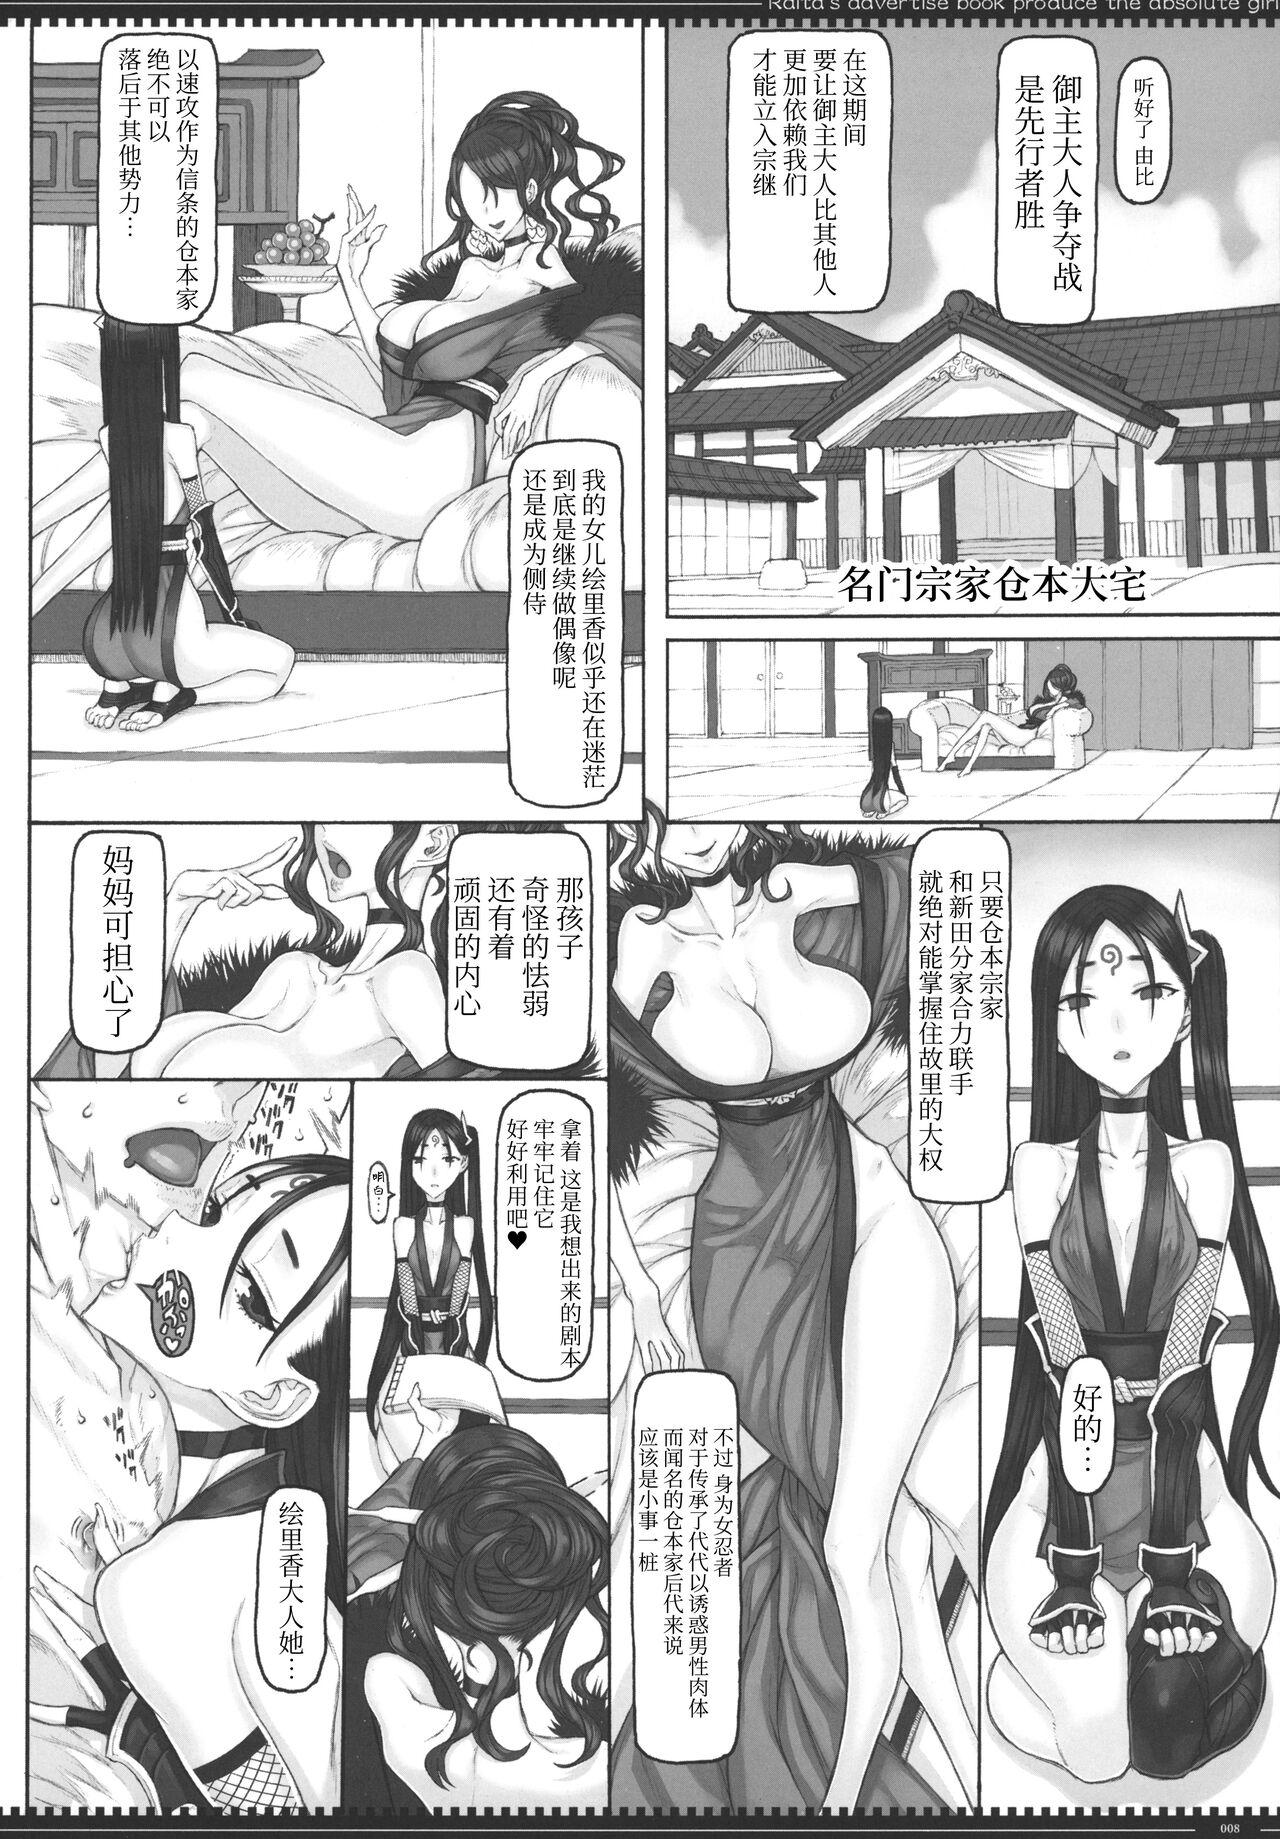 Amatuer Mahou Shoujo 22.0 + C101 Kaijou Gentei Orihon - Zettai junpaku mahou shoujo Fitness - Page 7